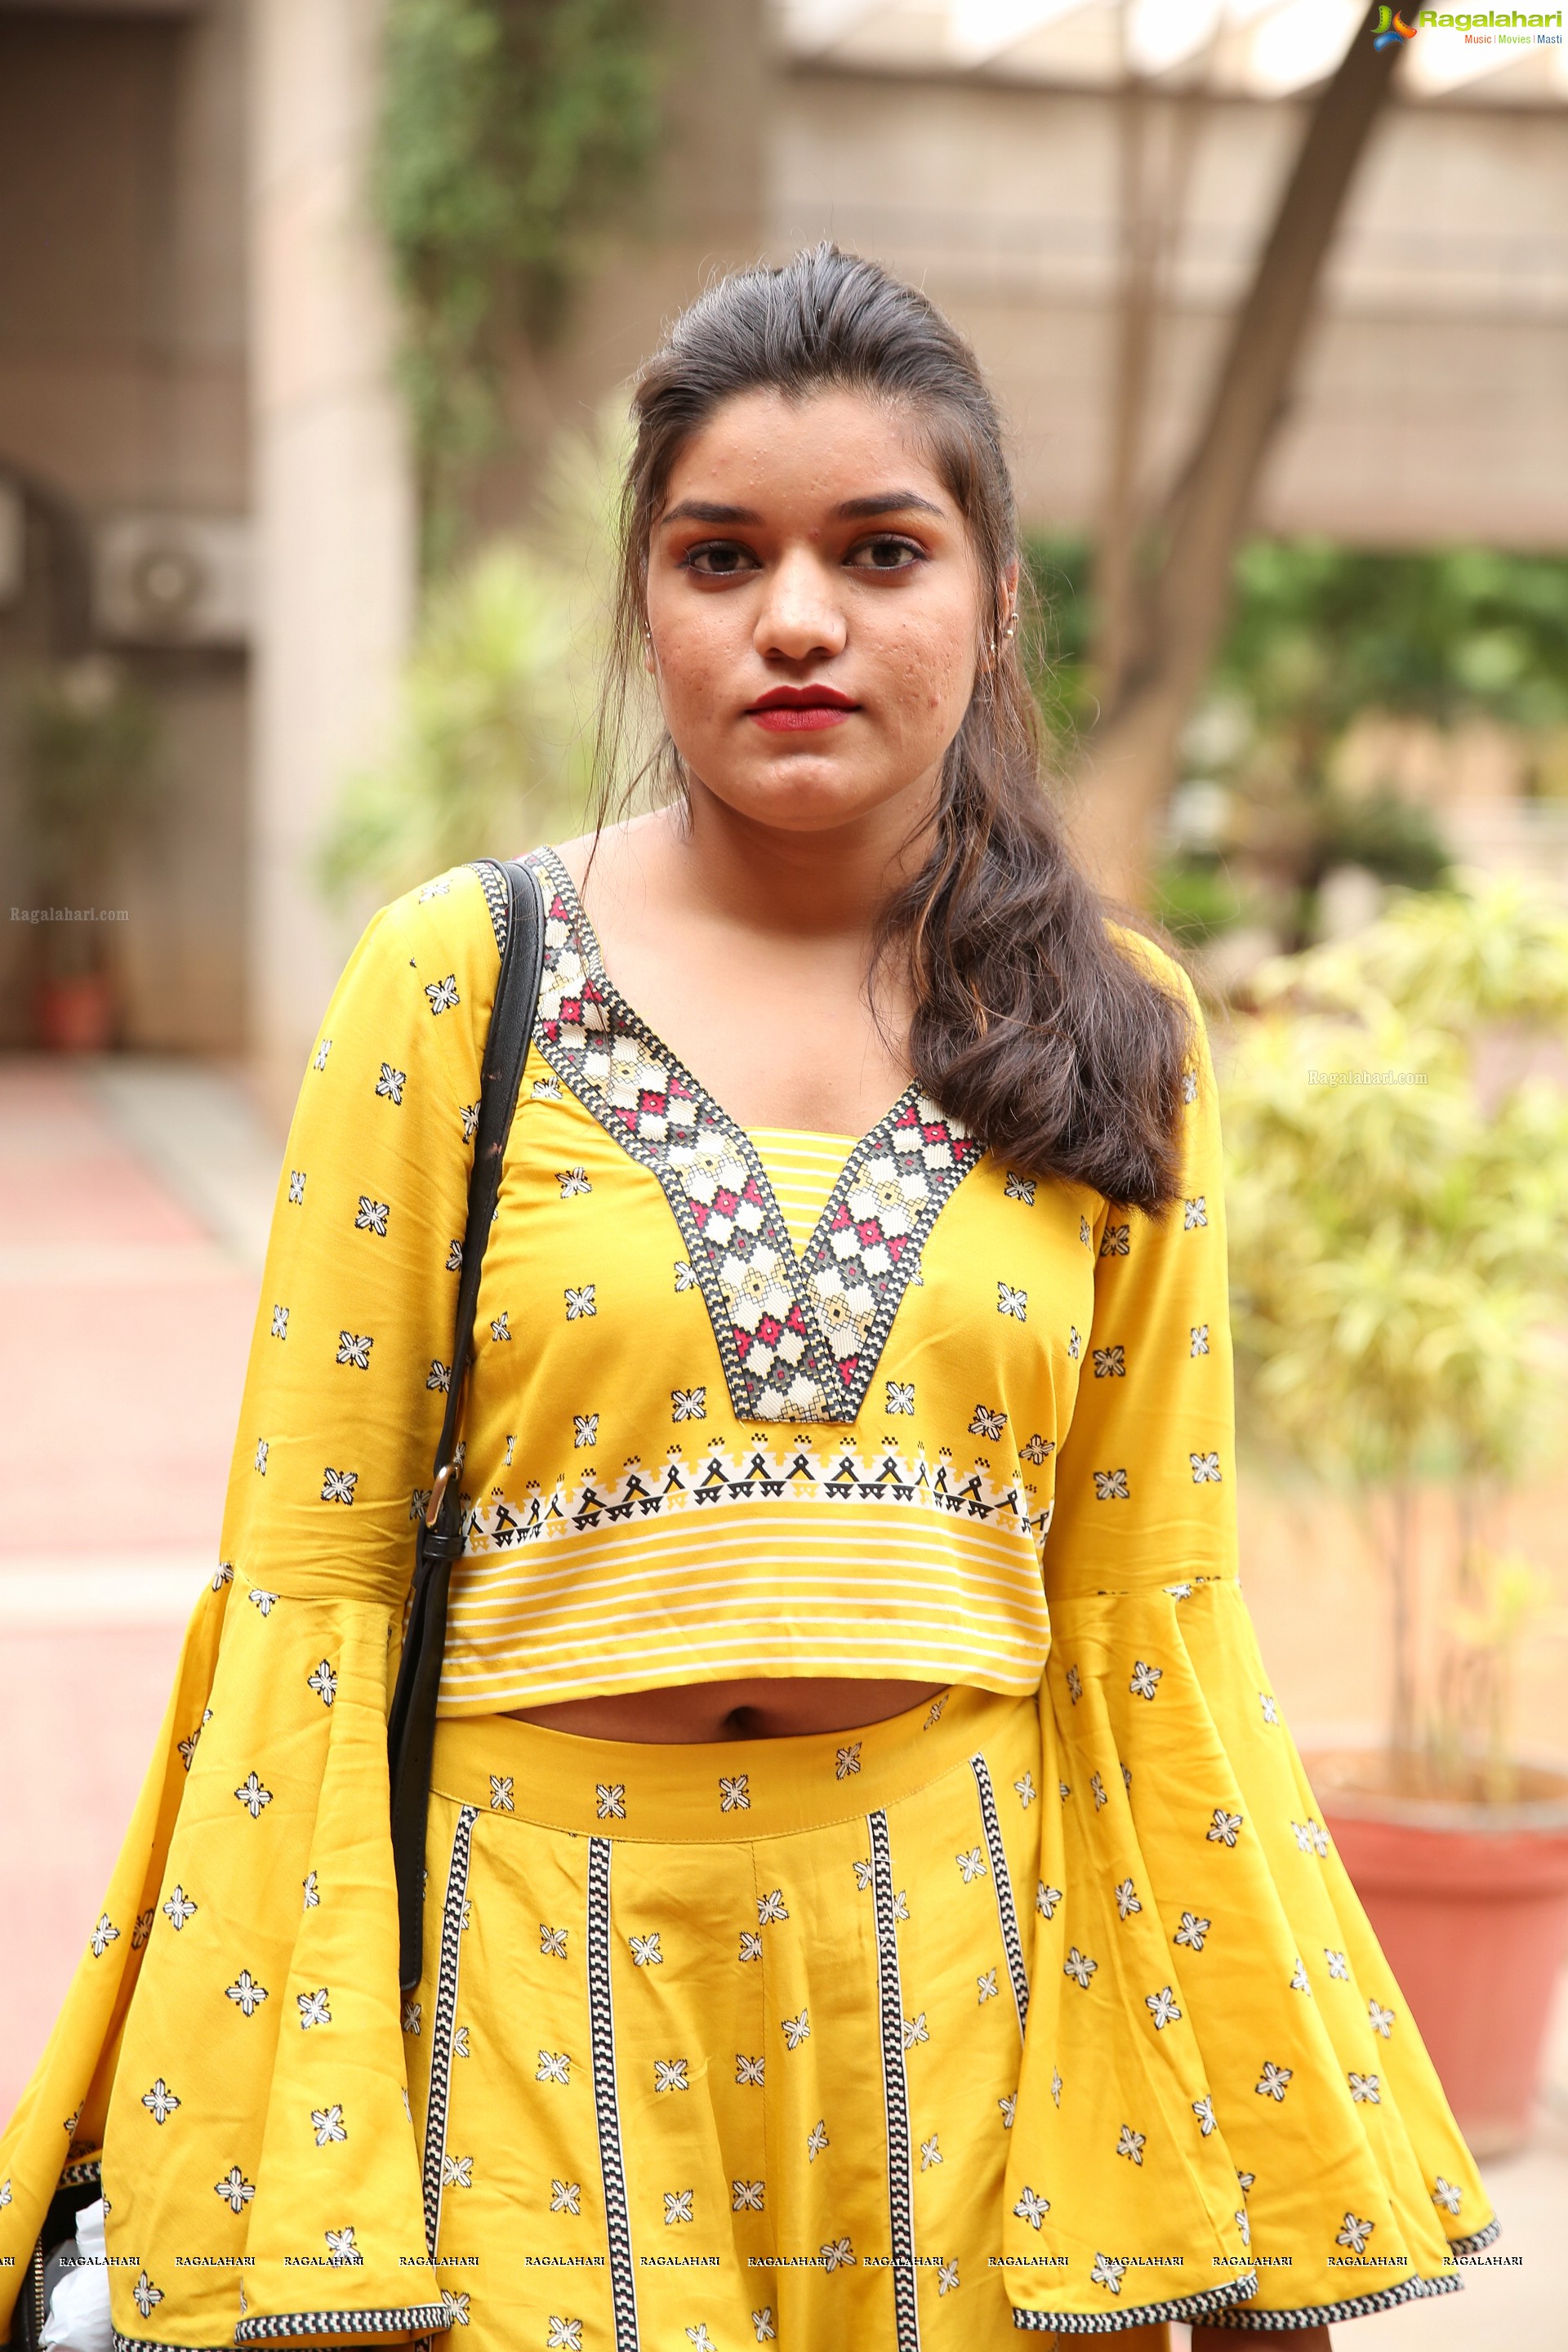 NIFT Fashionova Knitmoda 2018 at NIFT Hyderabad